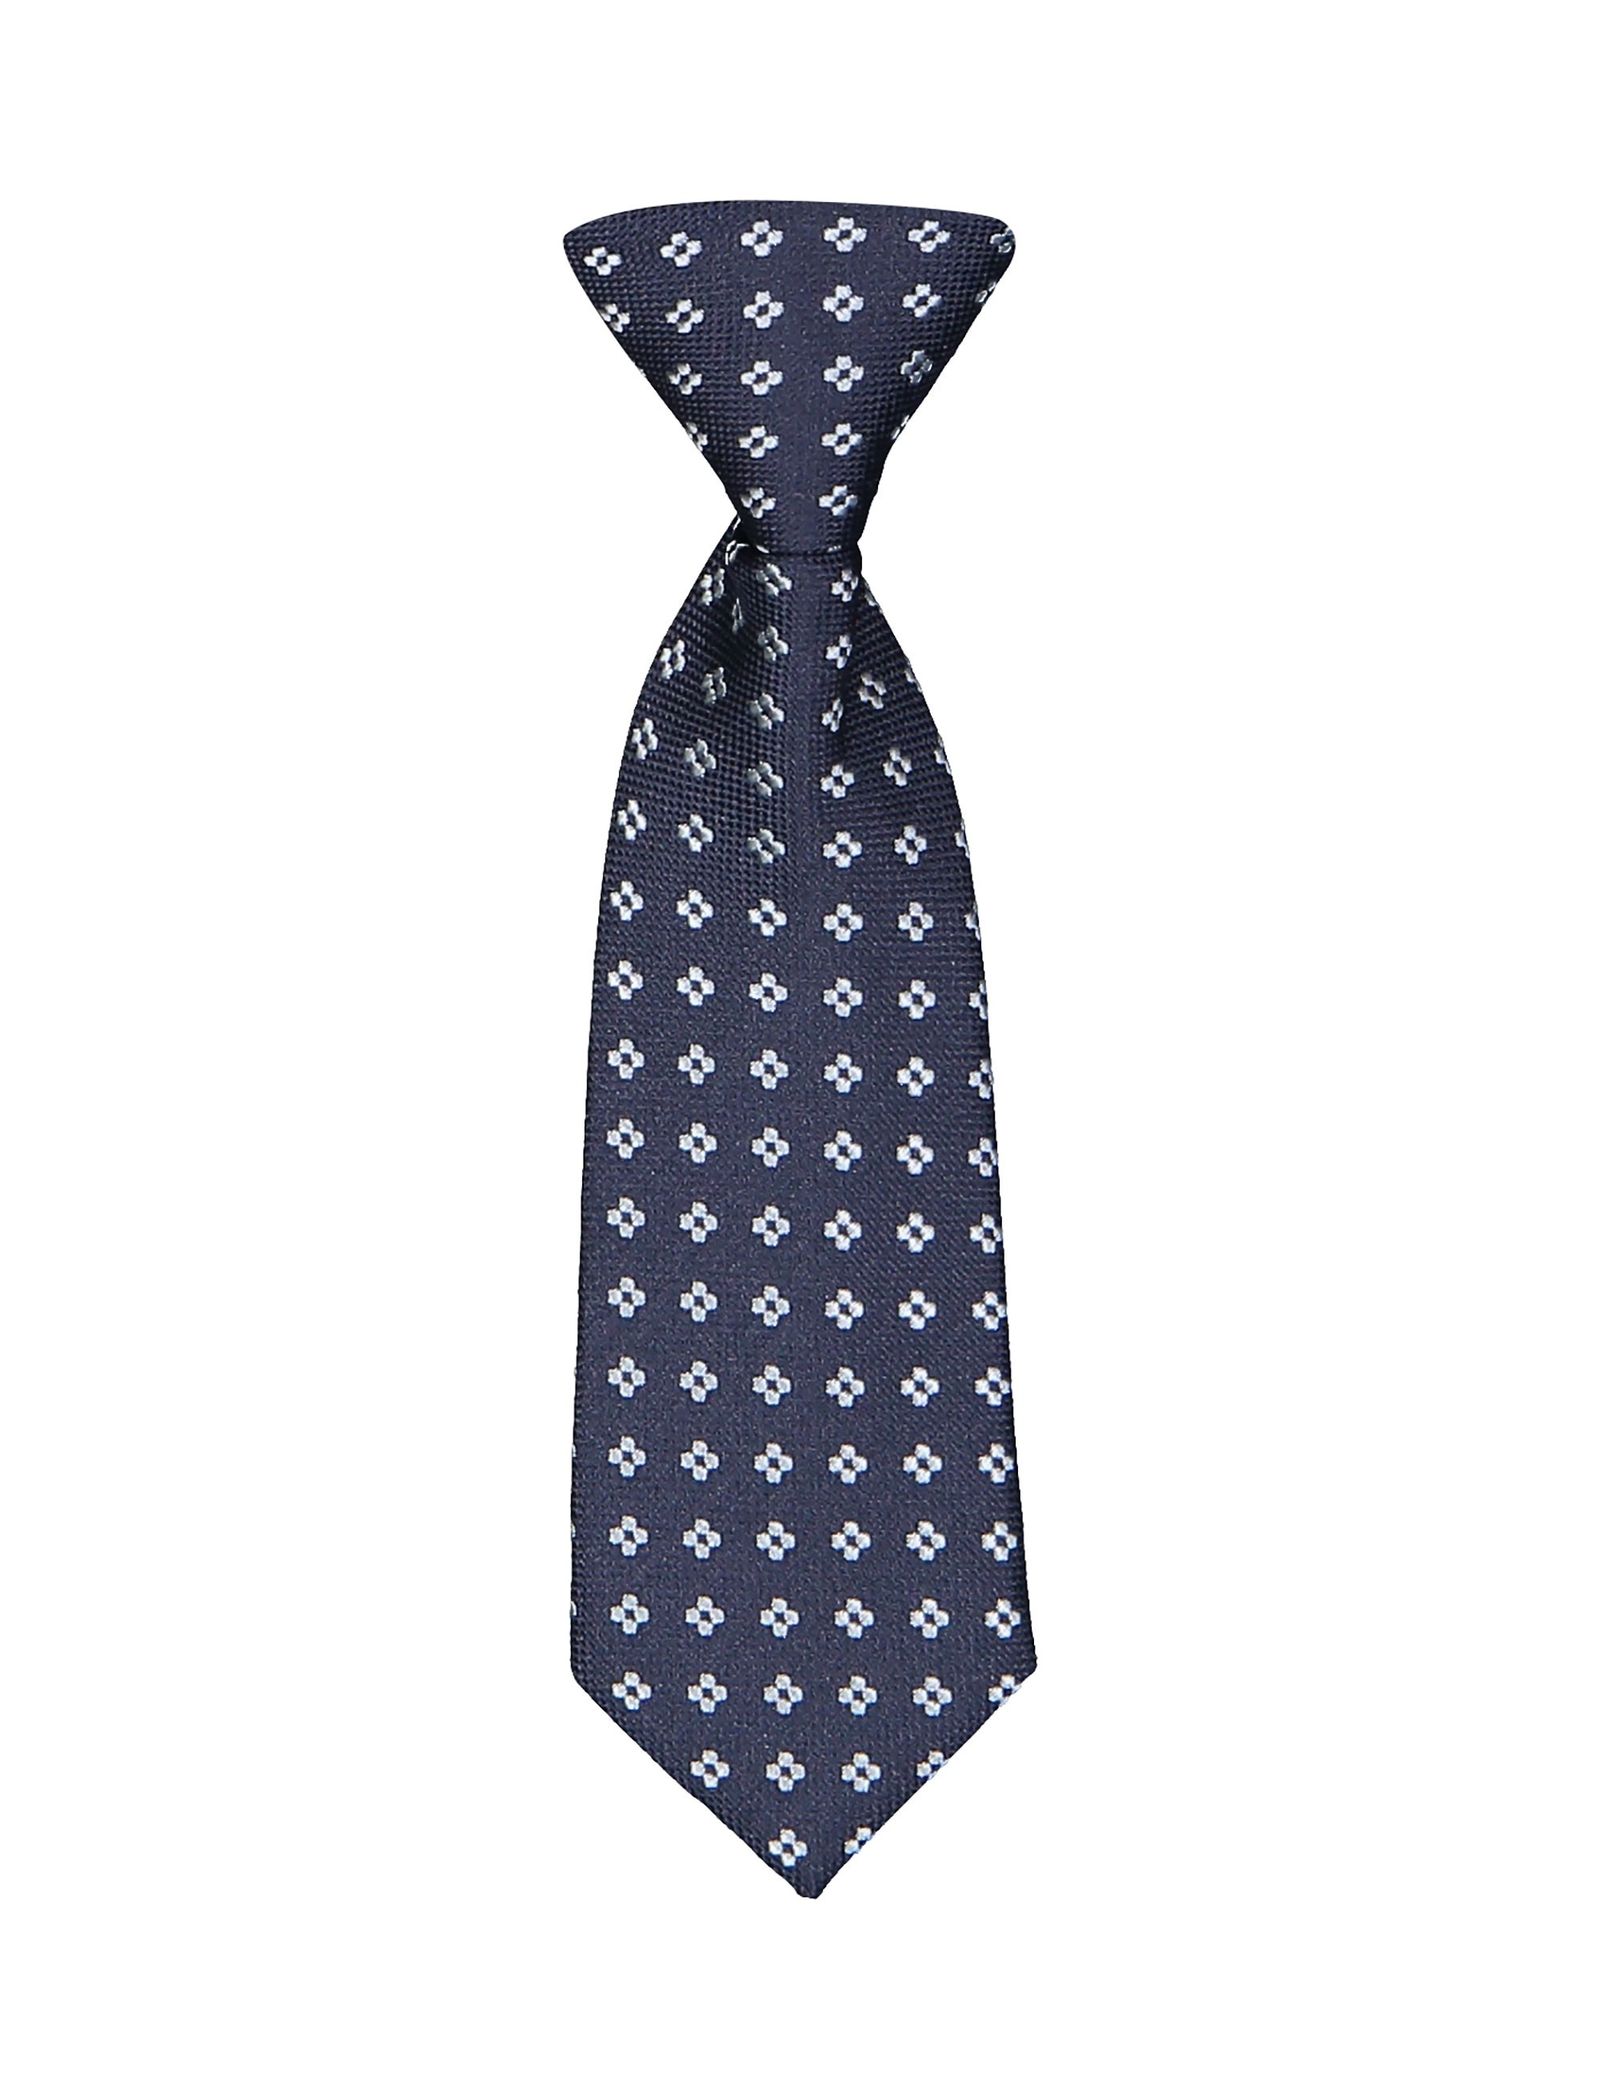 کراوات طرح دار پسرانه - ایدکس تک سایز - سرمه اي - 1